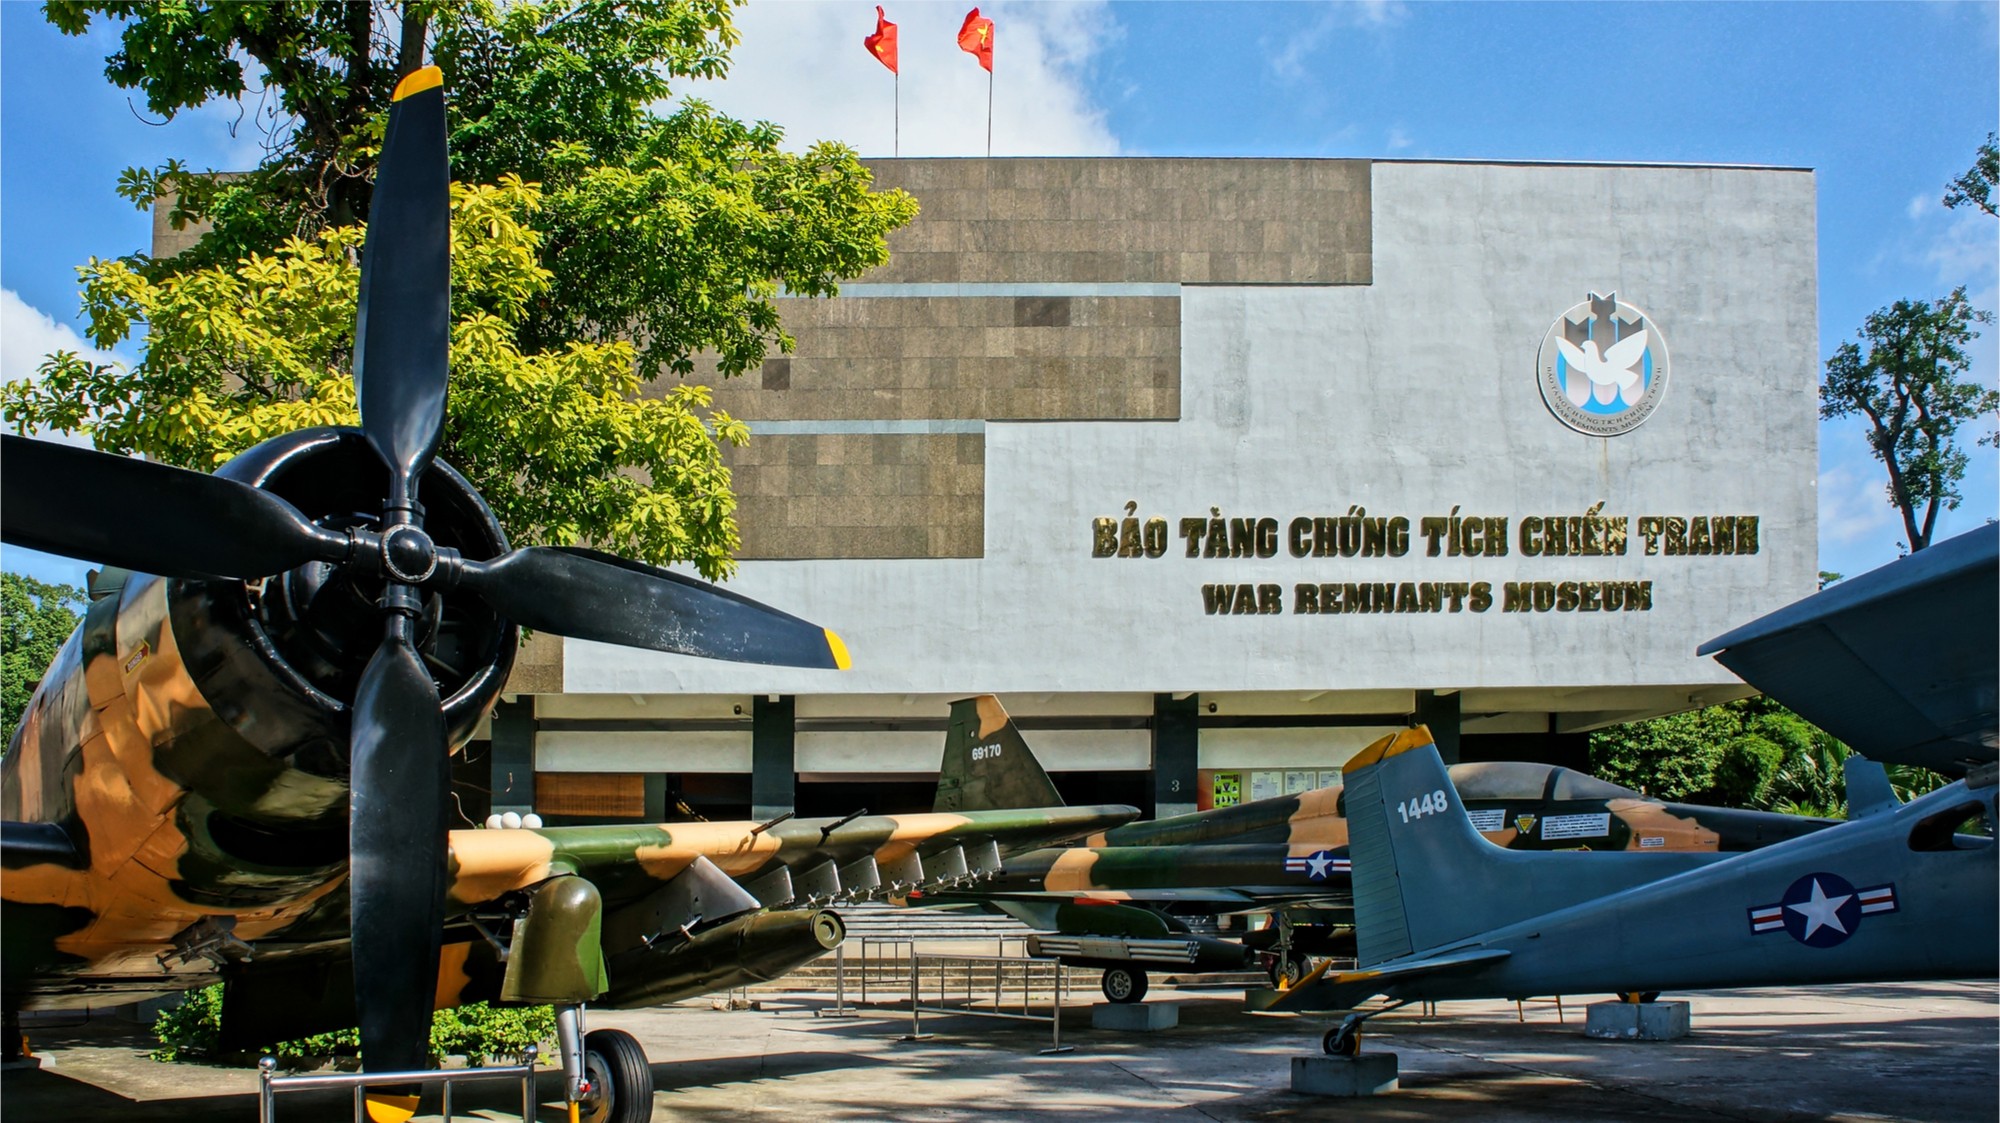 Bảo tàng chứng tích chiến tranh Hồ Chí Minh. Hình: Sưu tầm